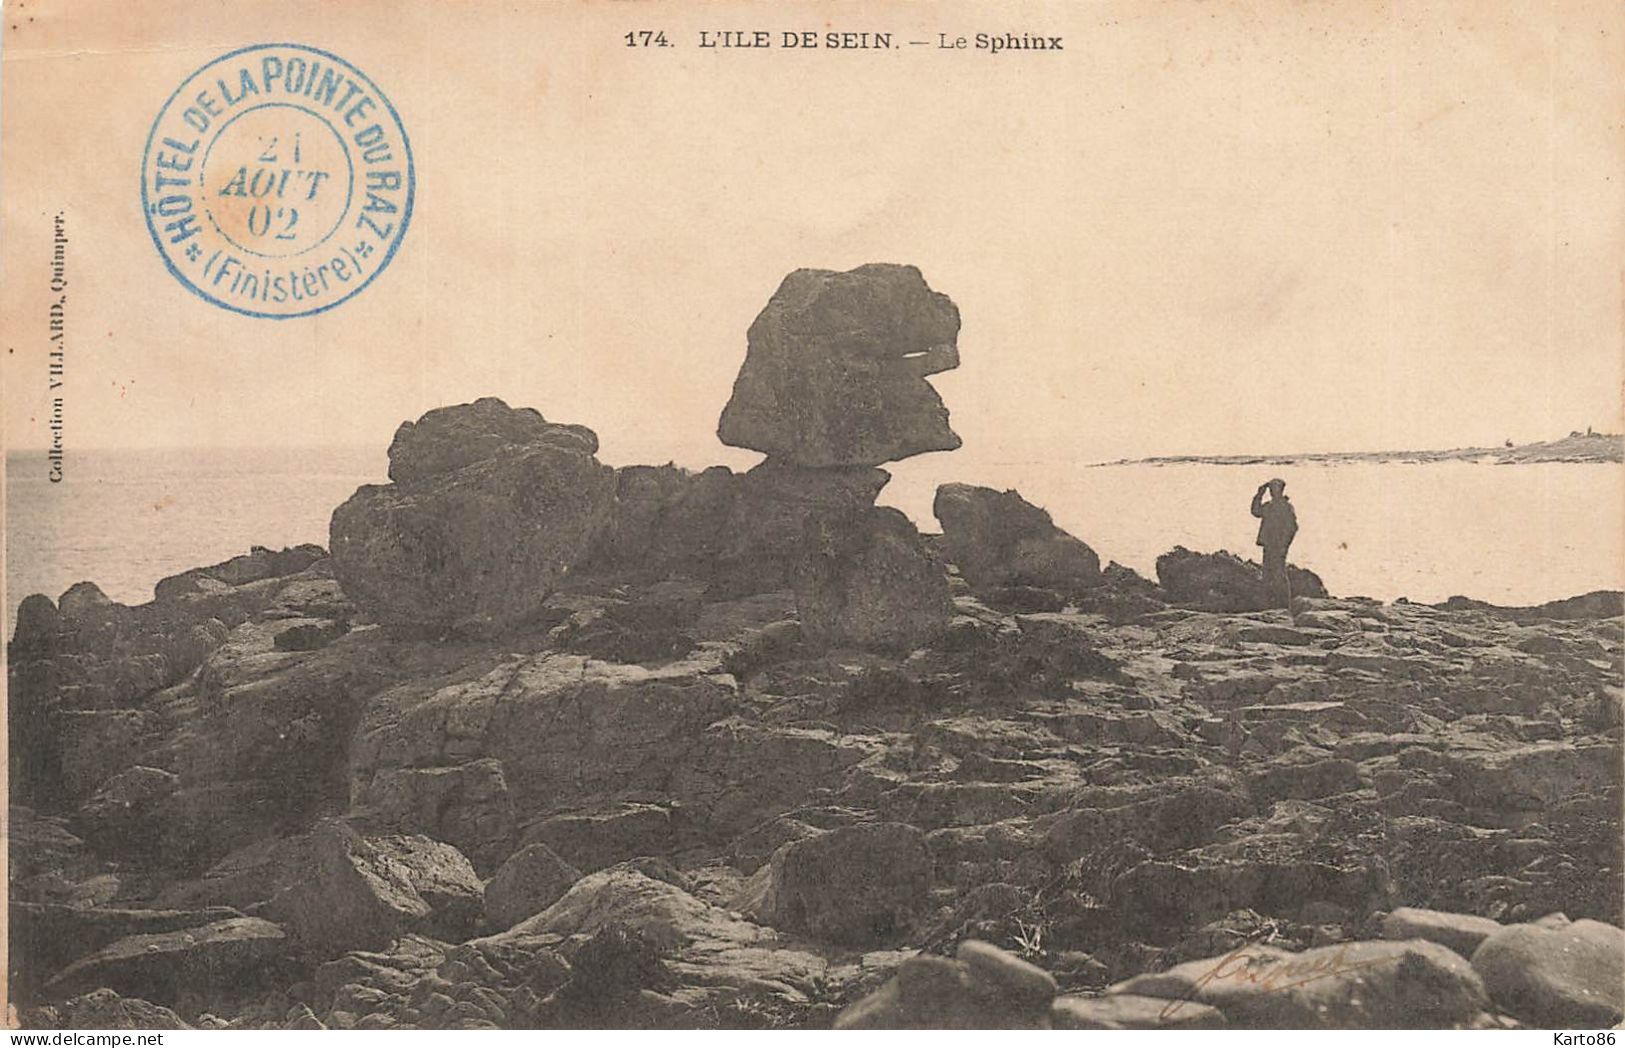 Ile De Sein * Le Sphinx * Villageois * Cachet Hôtel De La Pointe Du Raz 1902 - Ile De Sein